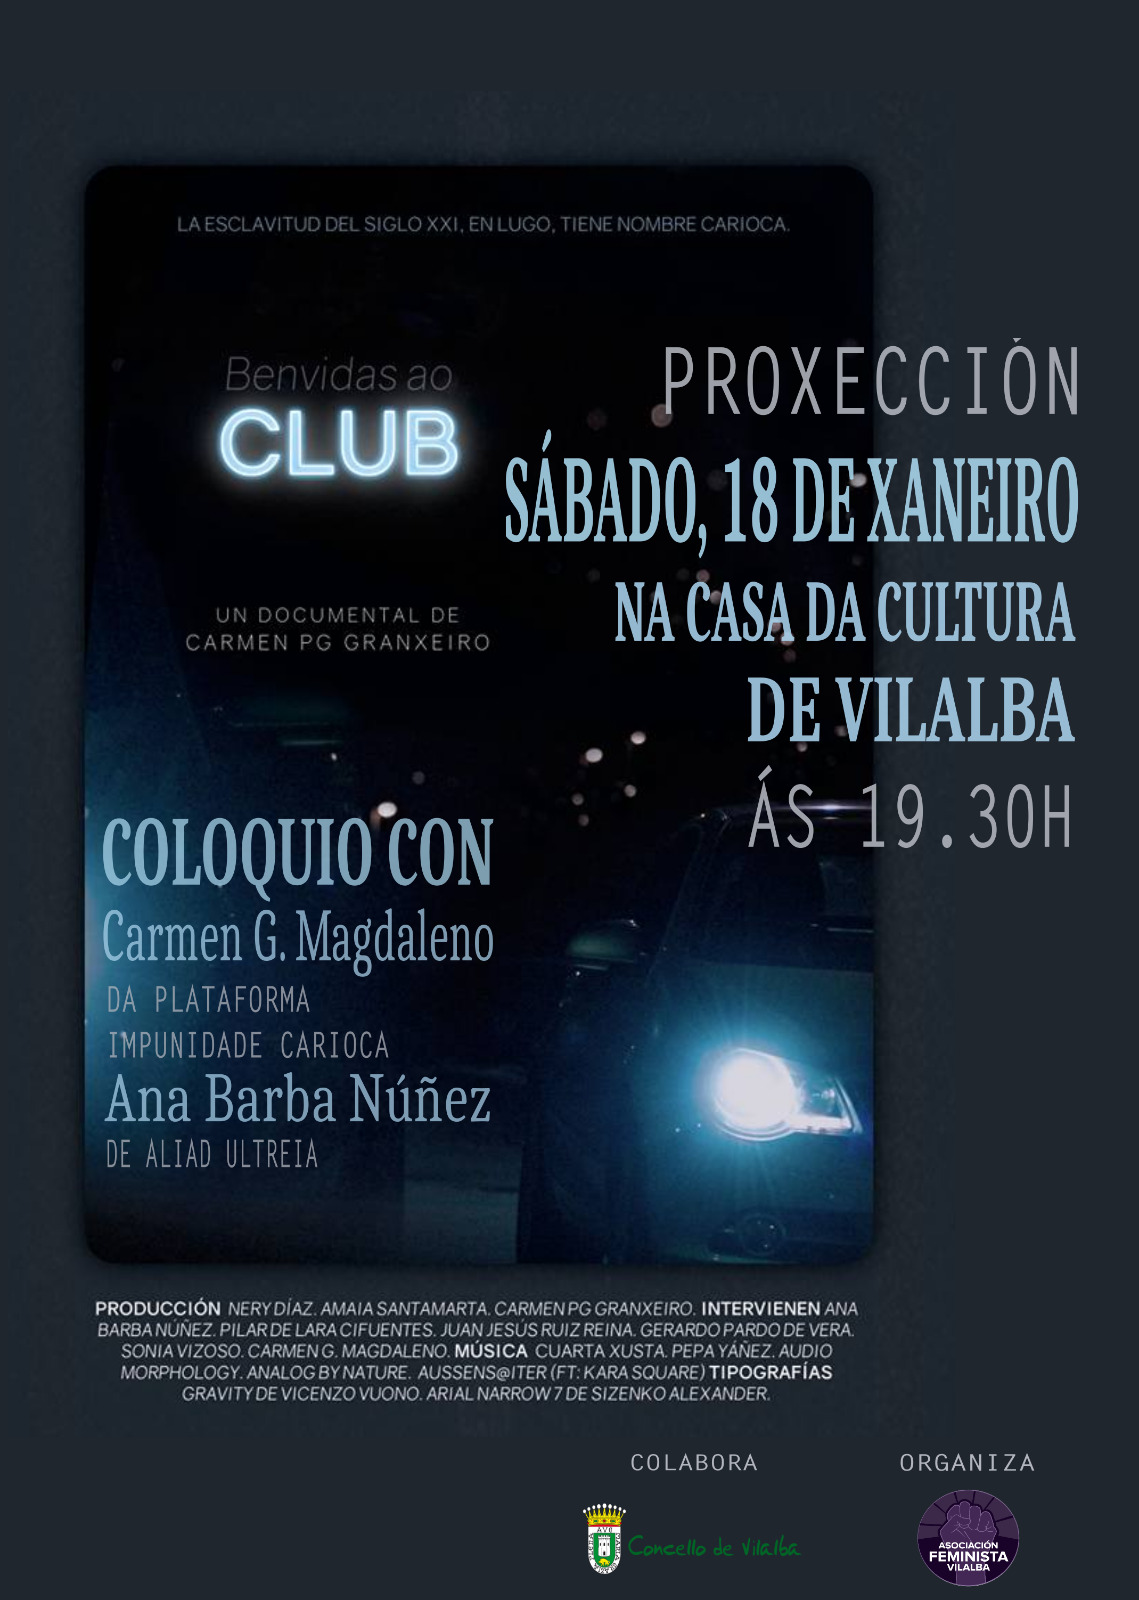 Cartel da Proxección de "Benvidas ao Club" en Vilalba